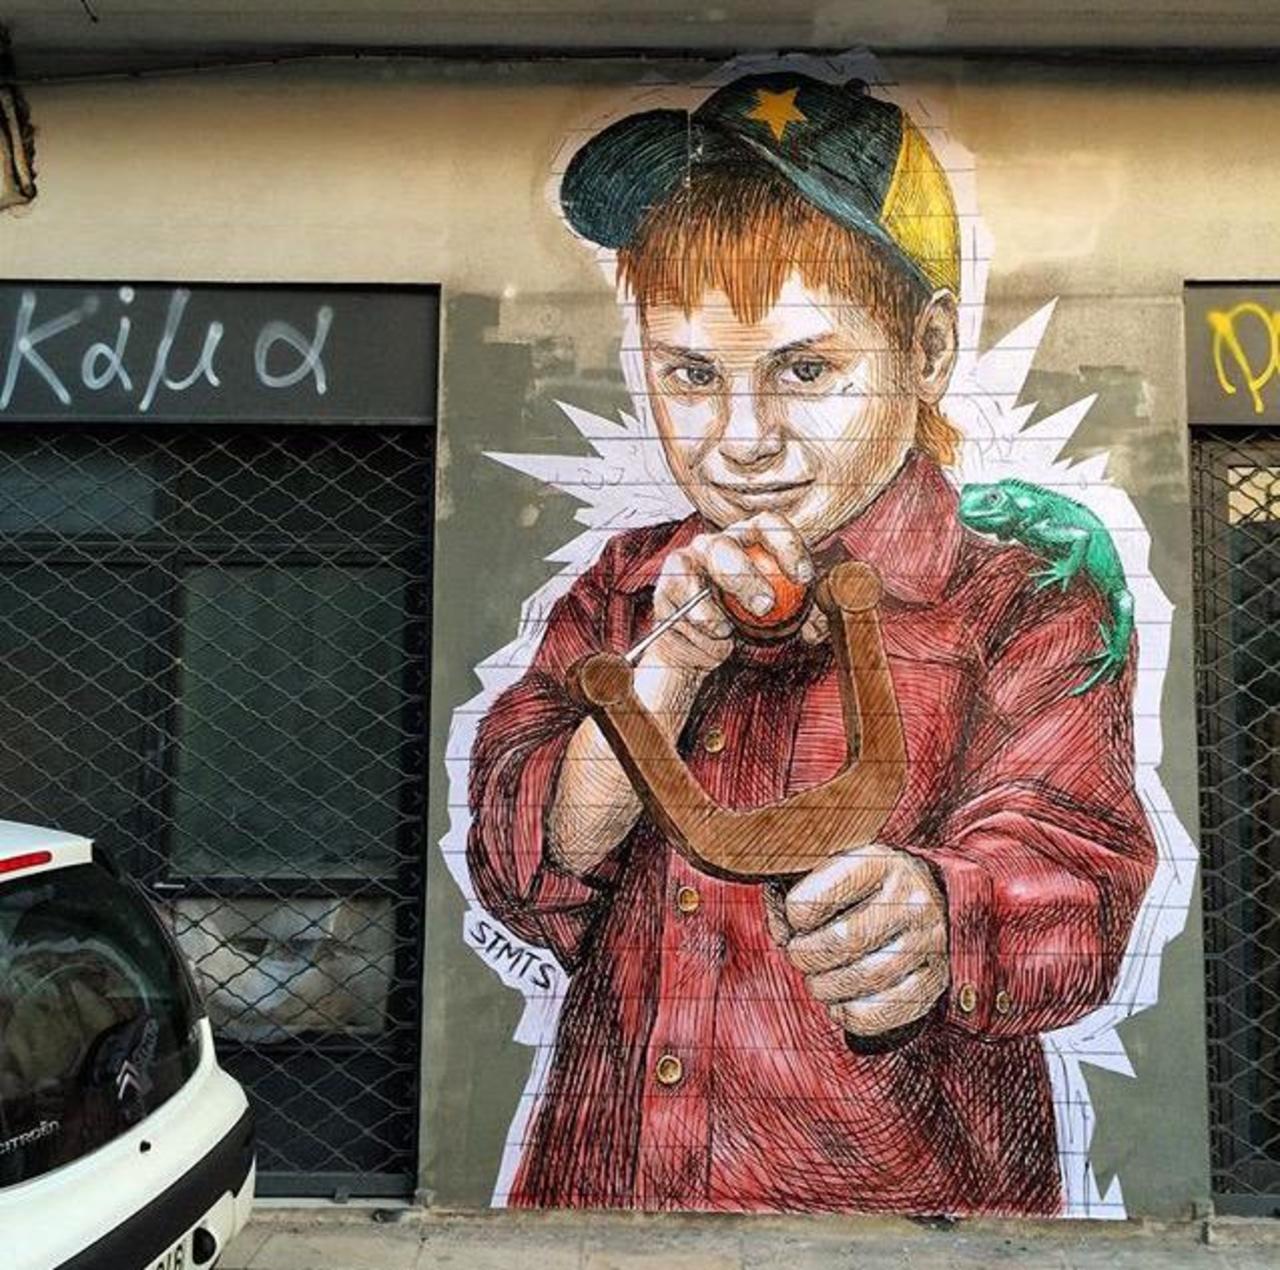 Street Art by STMTS in Athens

#art #graffiti #mural #streetart http://t.co/7VchtcHf55